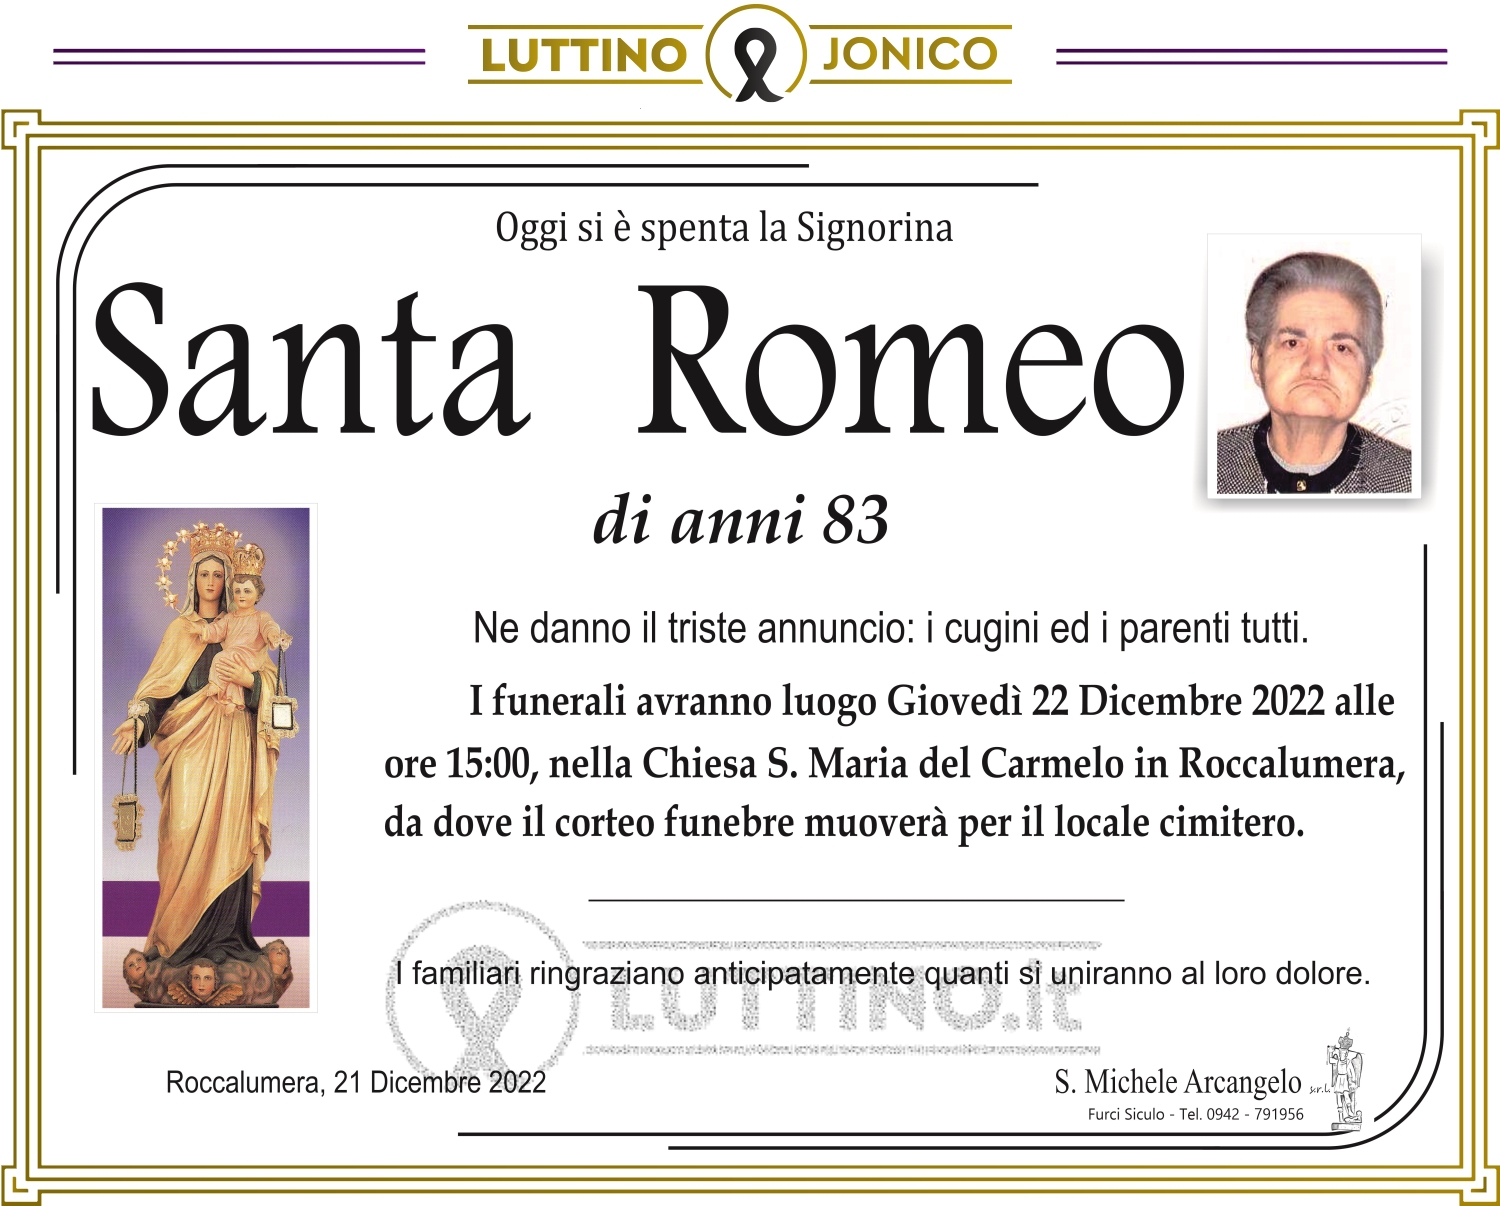 Santa Romeo